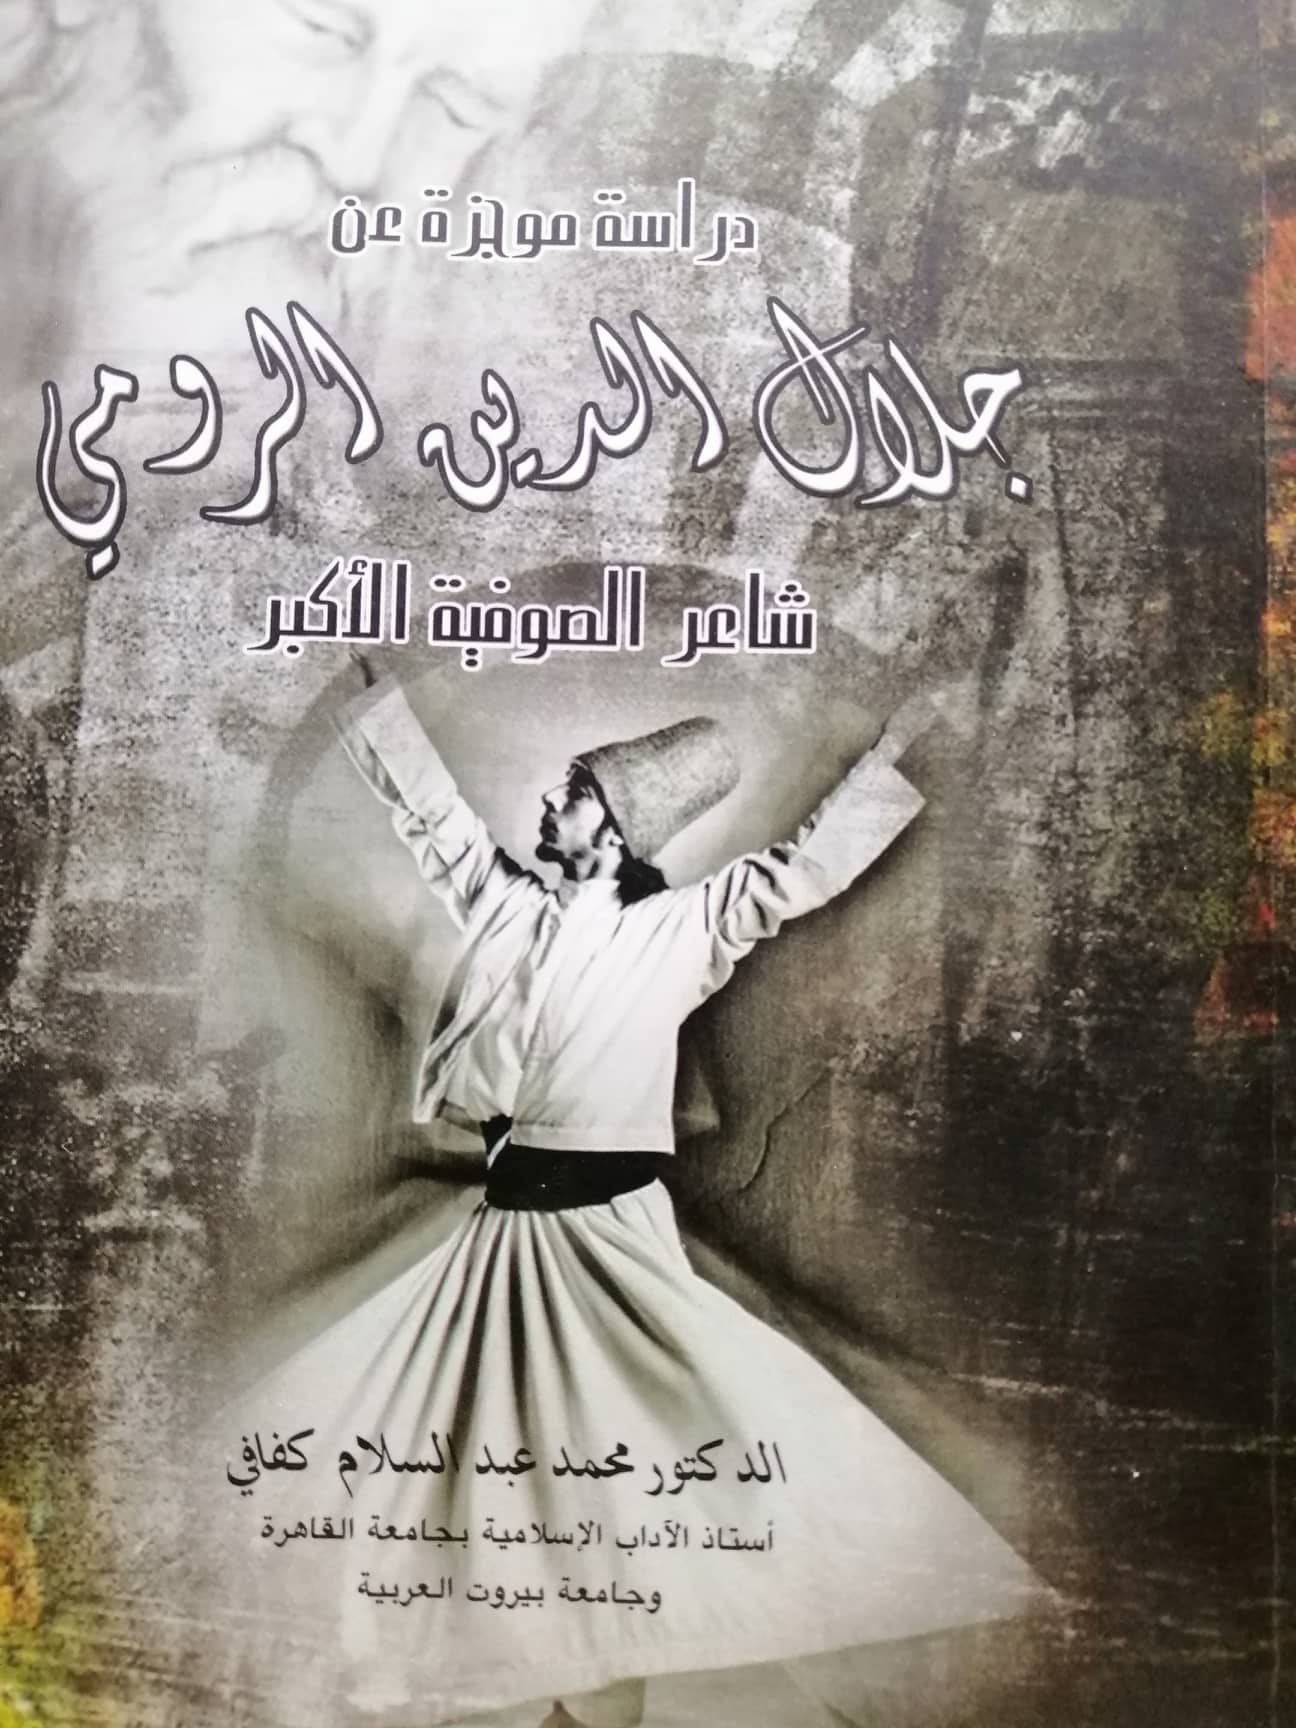 جلال الدين الرومي شاعر الصوفية الأكبر دراسة موجزة كتبها الدكتور محمد عبد السلام كفافي 